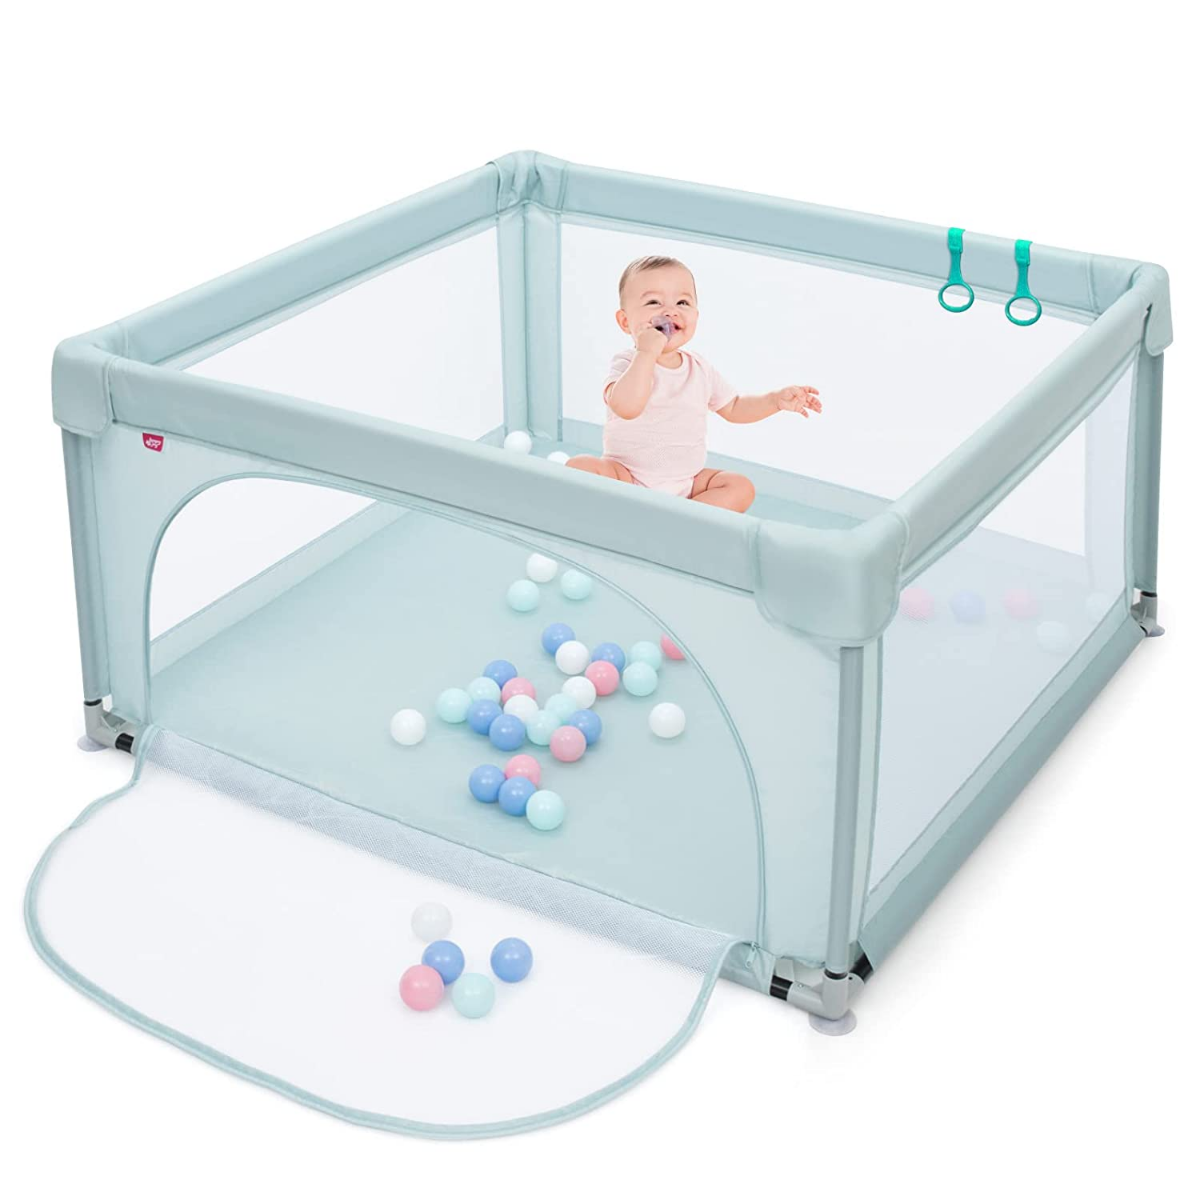 Baby-Laufstall Tragbarer Laufstall mit Sicherheitstoren 120 x 120 x 68 cm Blau